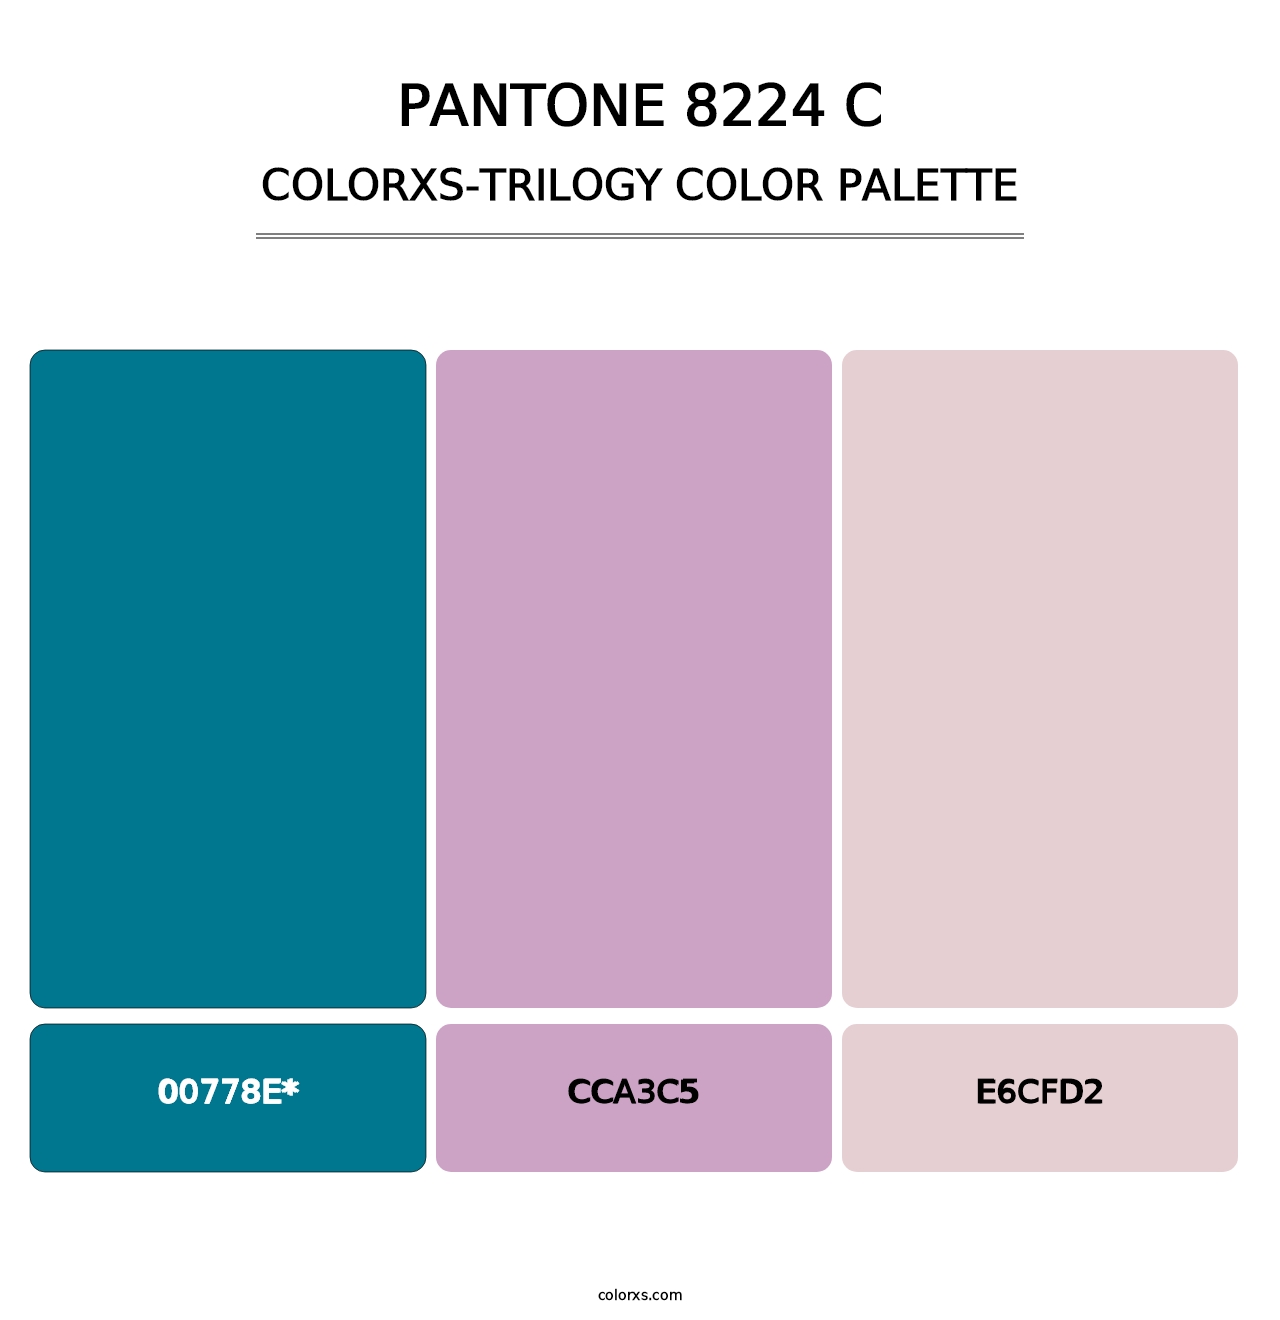 PANTONE 8224 C - Colorxs Trilogy Palette